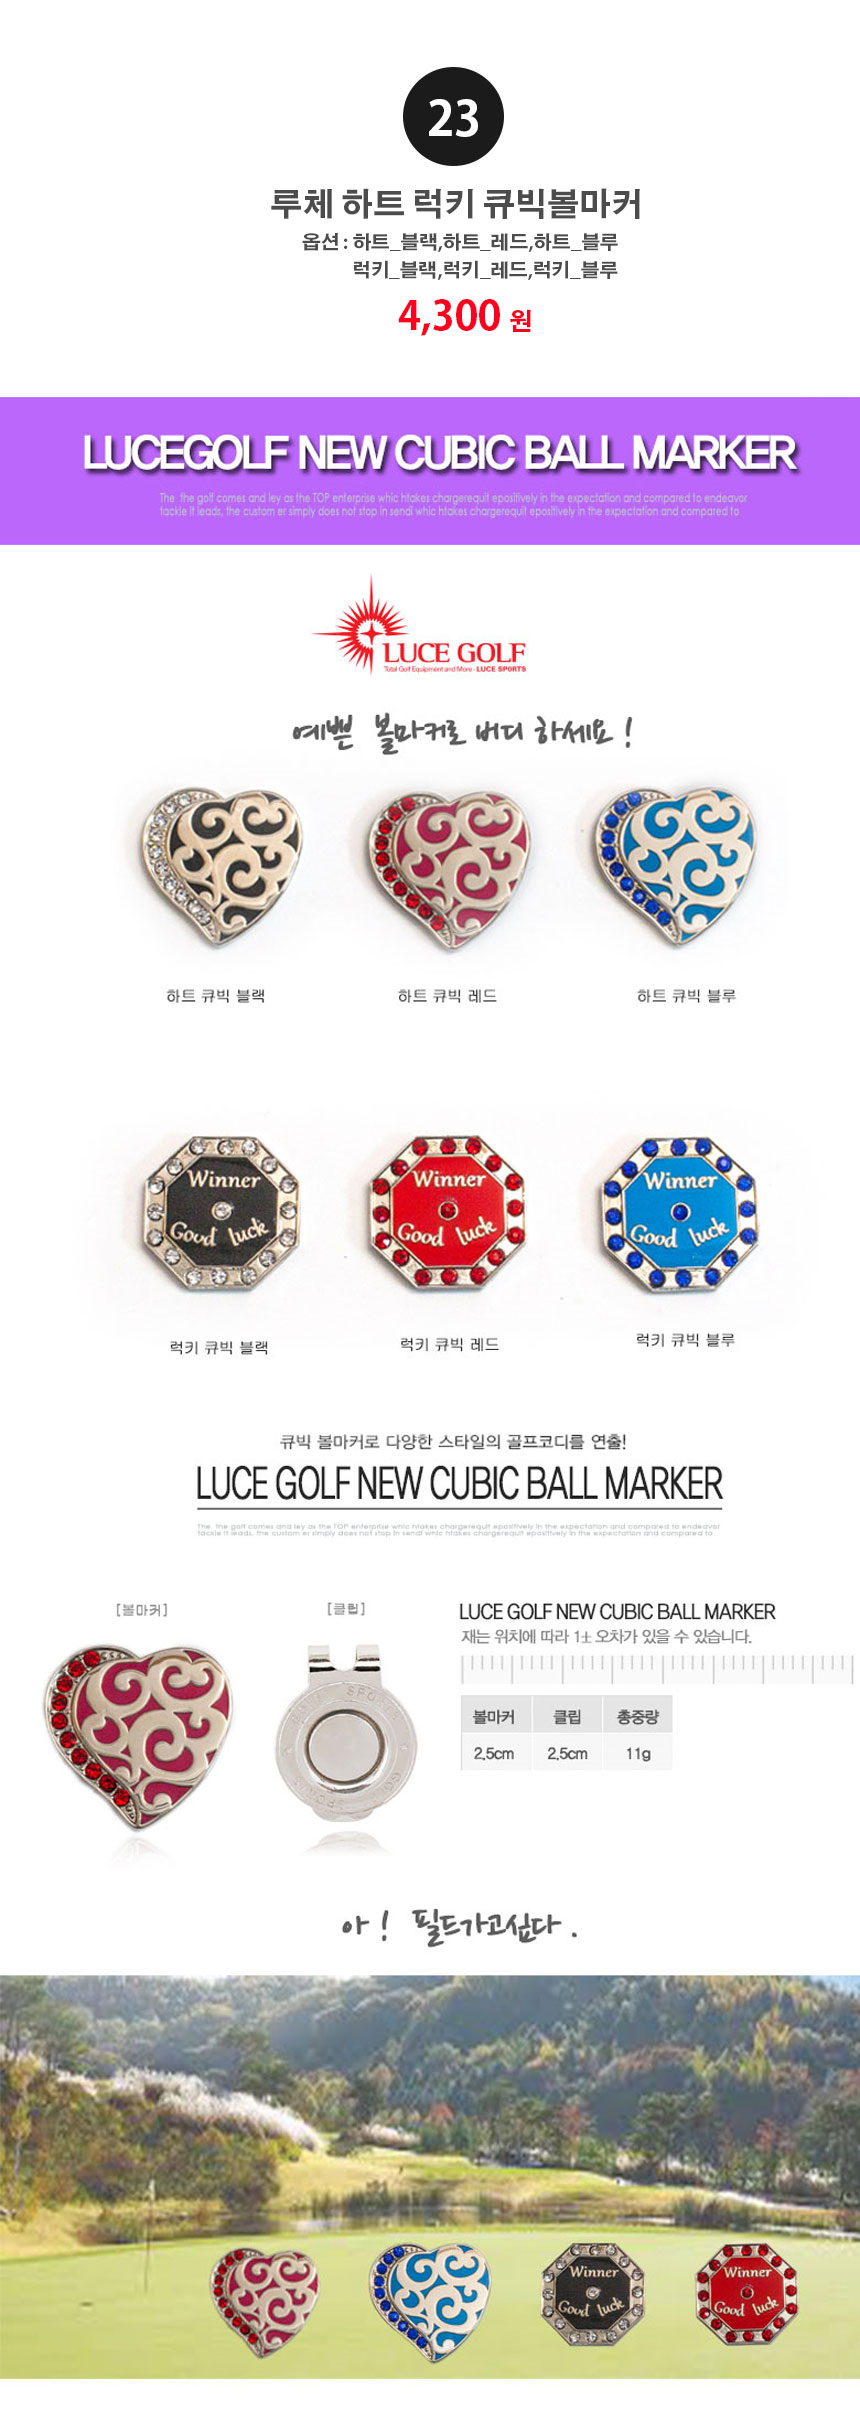 golf-tee-ball-maker-full-main-4-_07_131431.jpg